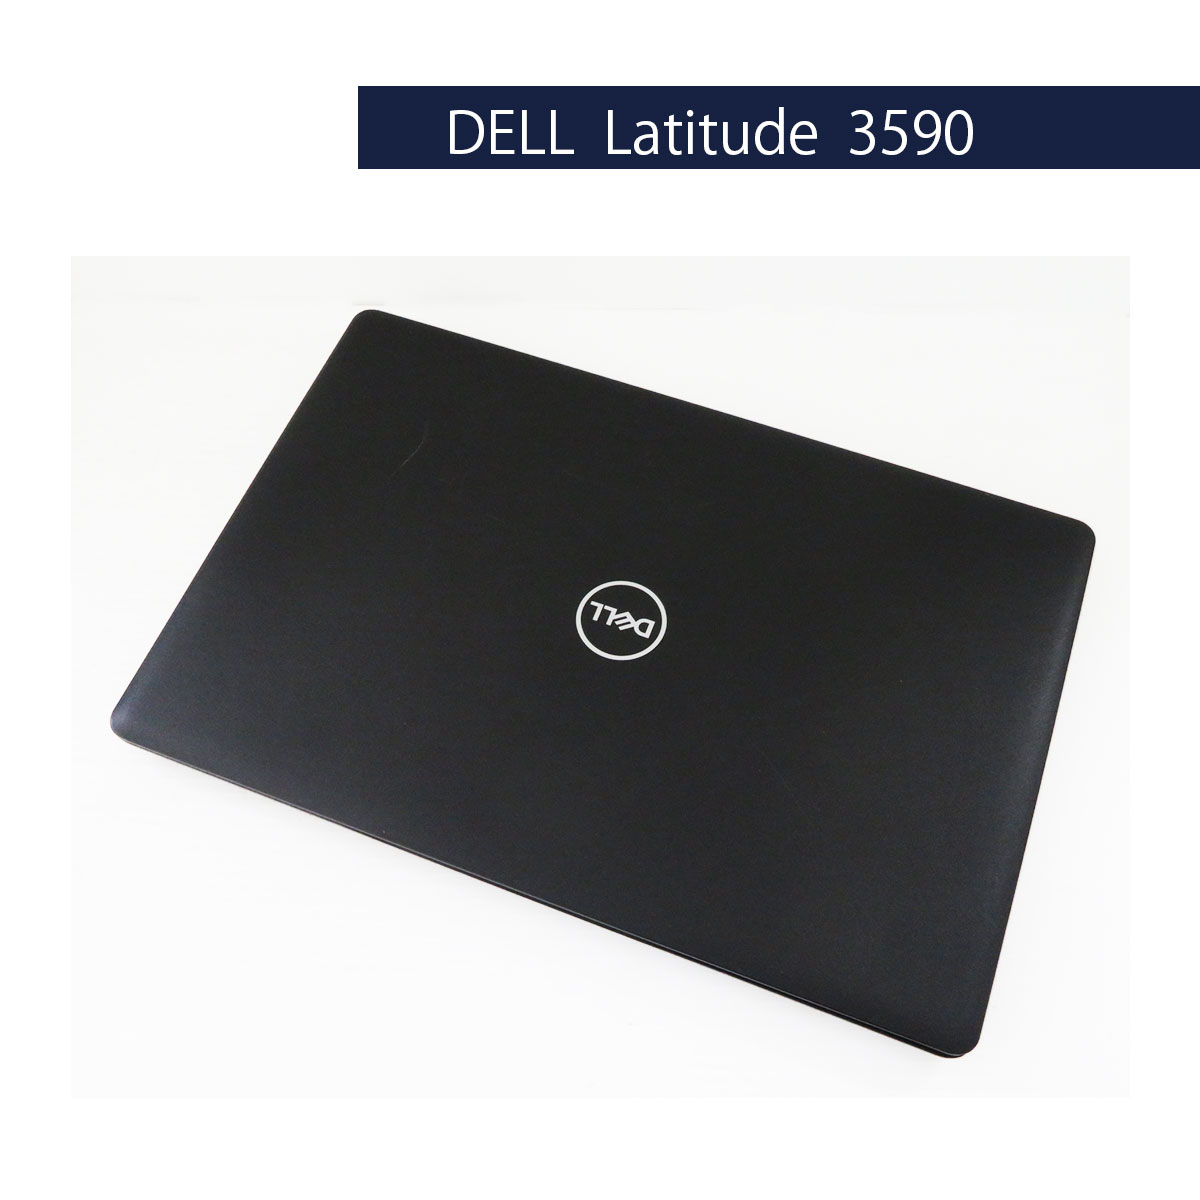 第7世代Corei3搭載 DELL Latitude 3590 Core i3 7130U 2.7GHz 4GB SSD